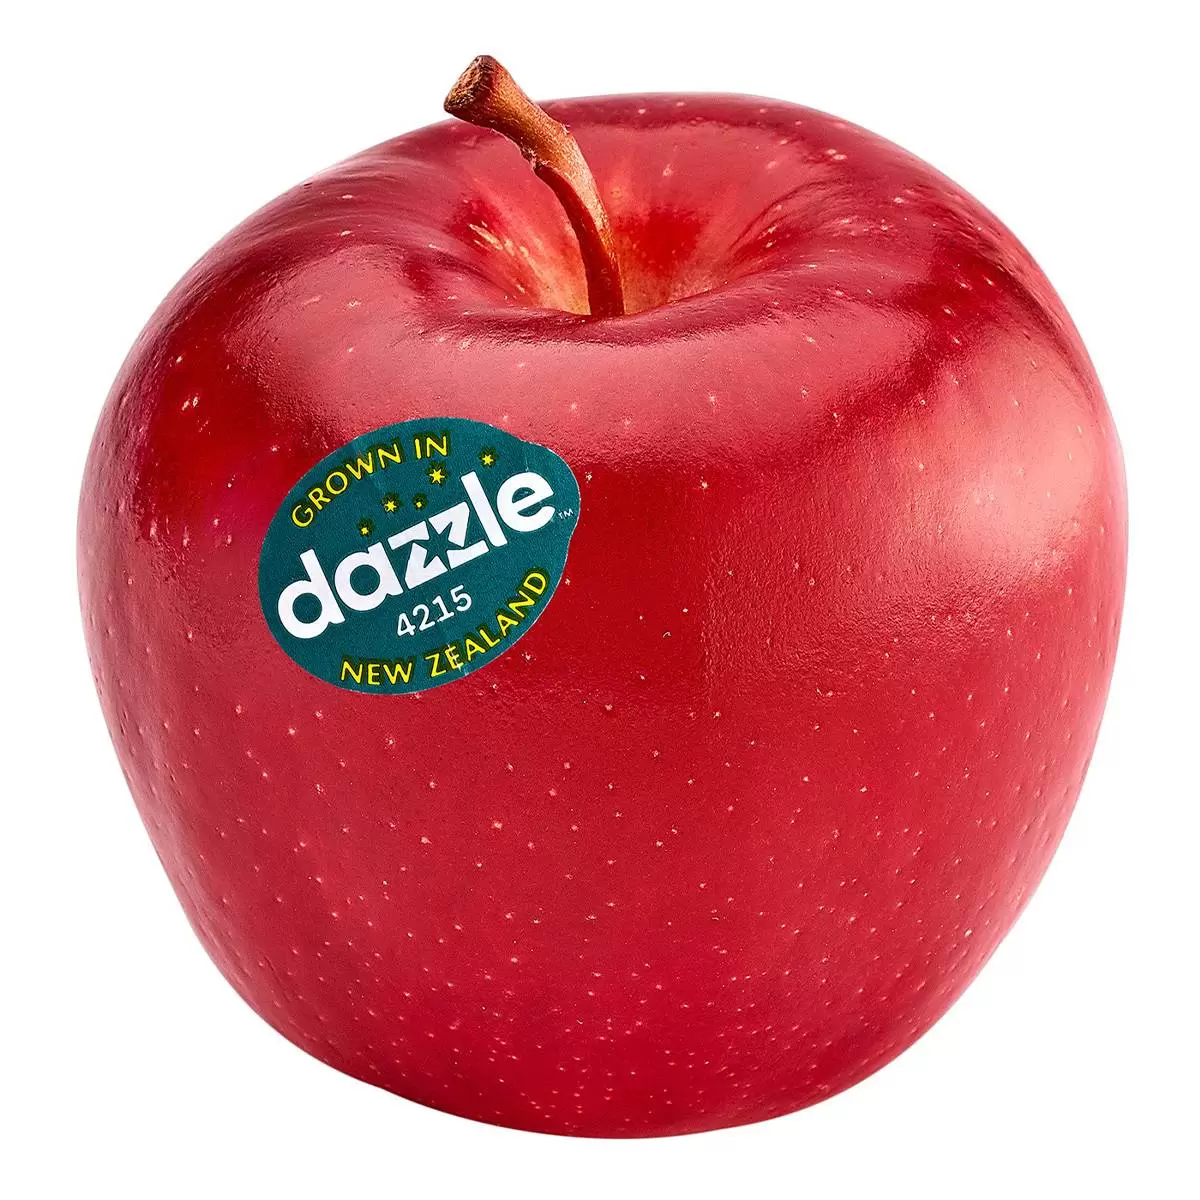 紐西蘭有機 Dazzle 蘋果 2.2公斤